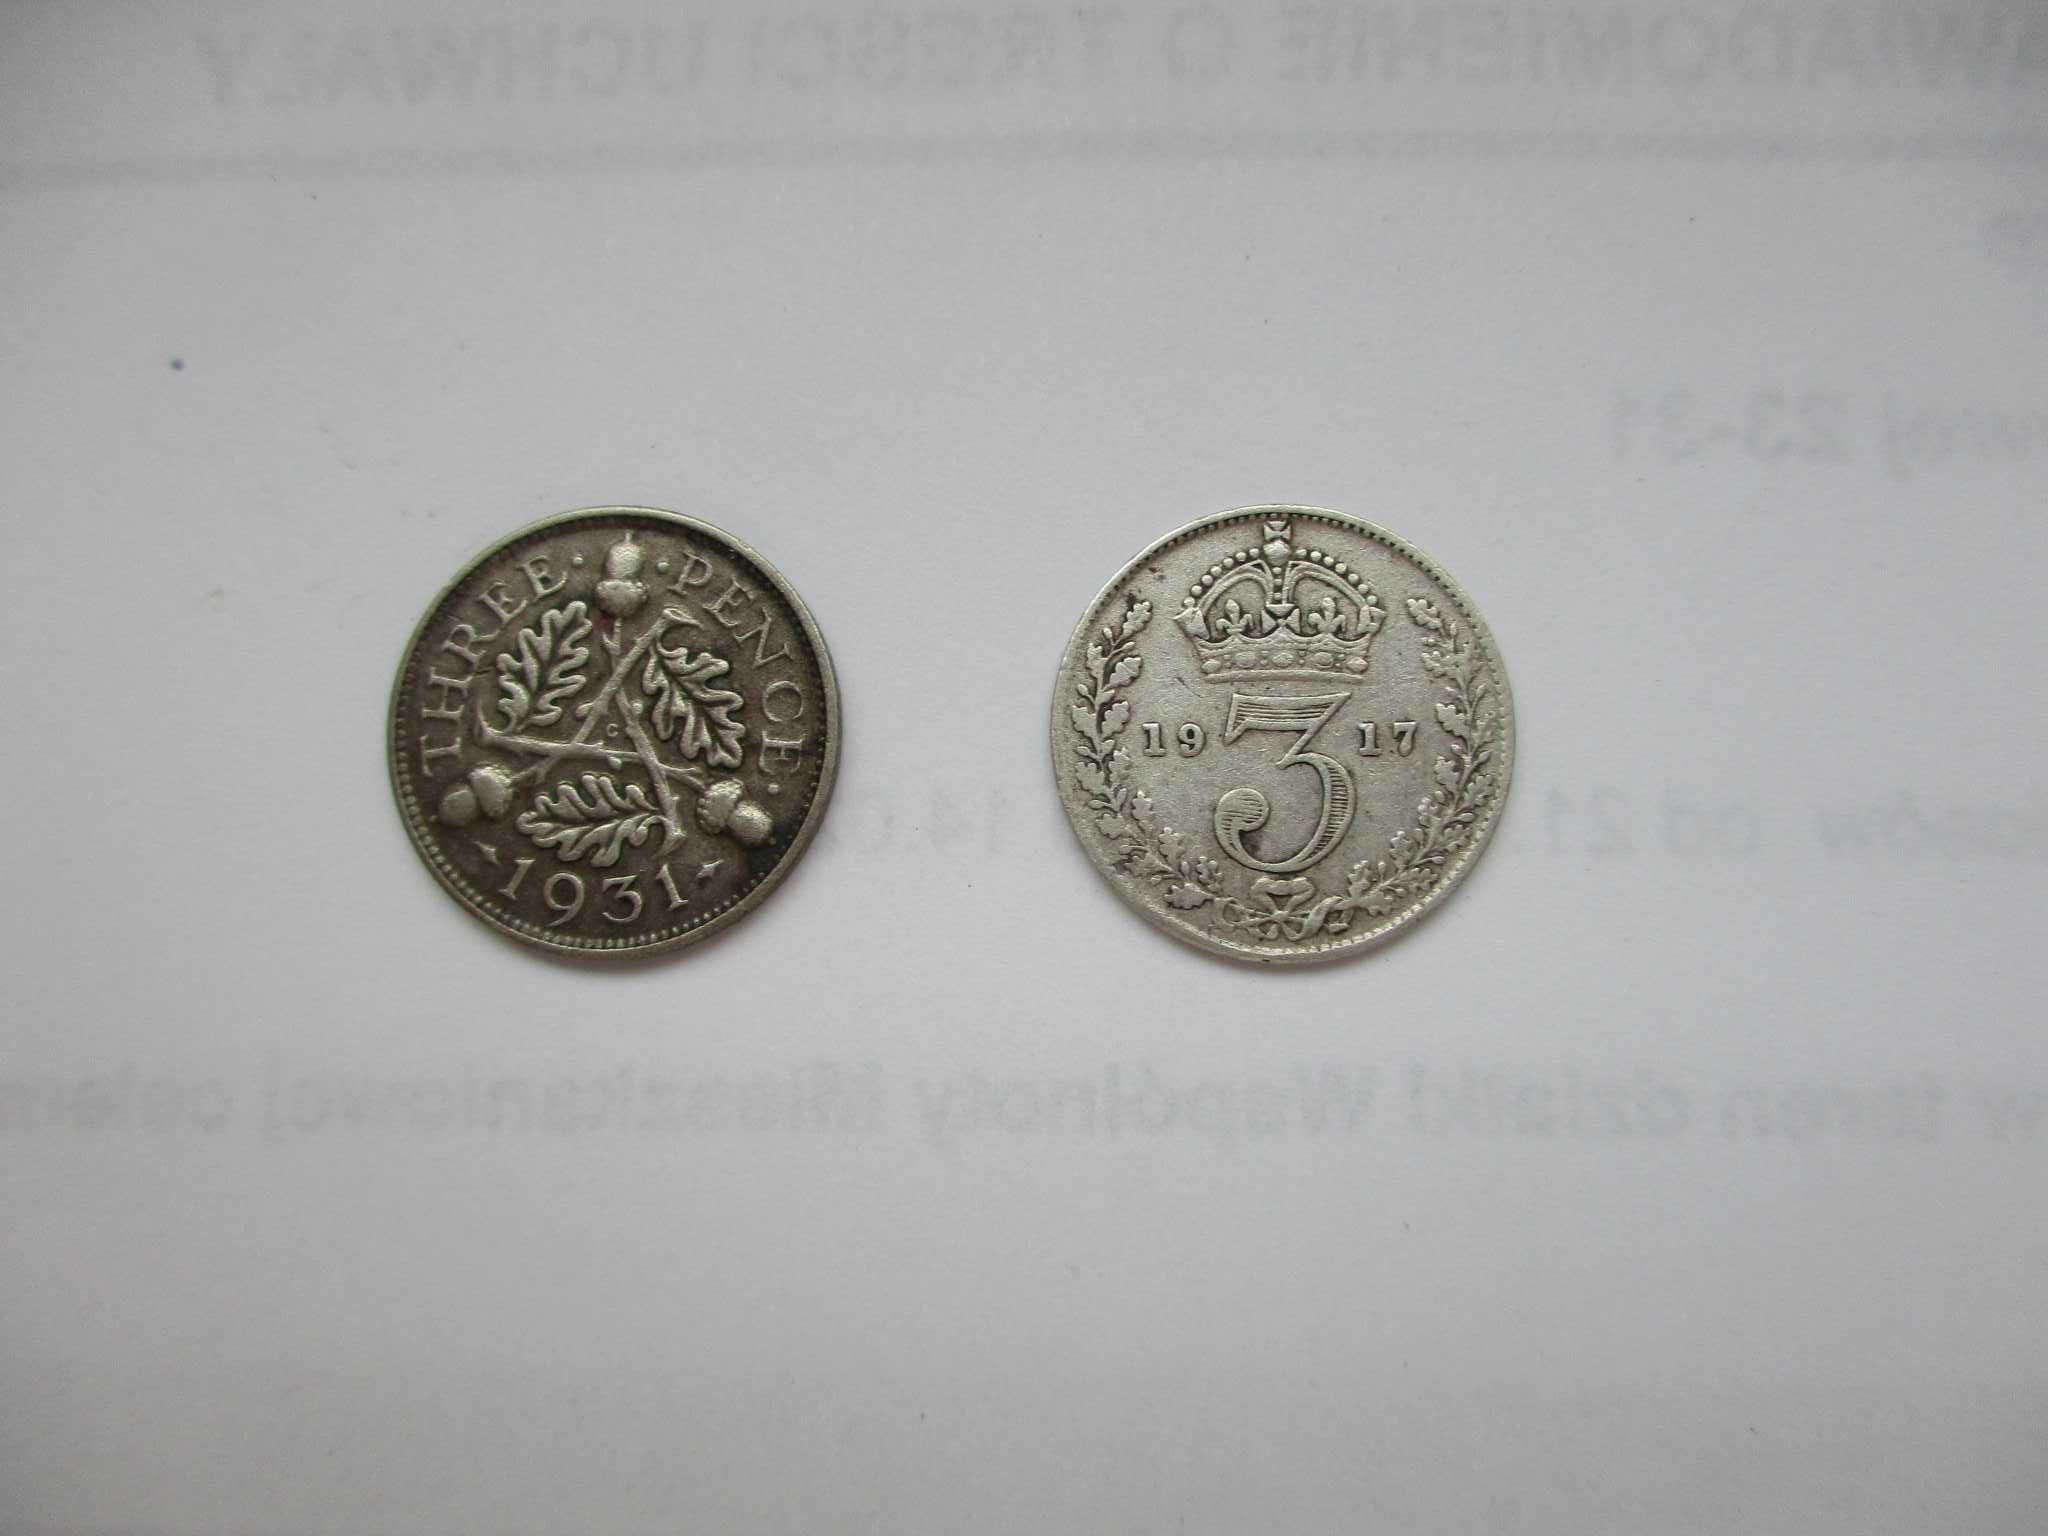 2 srebrne 3 pensówki z 1917 i 1931 roku